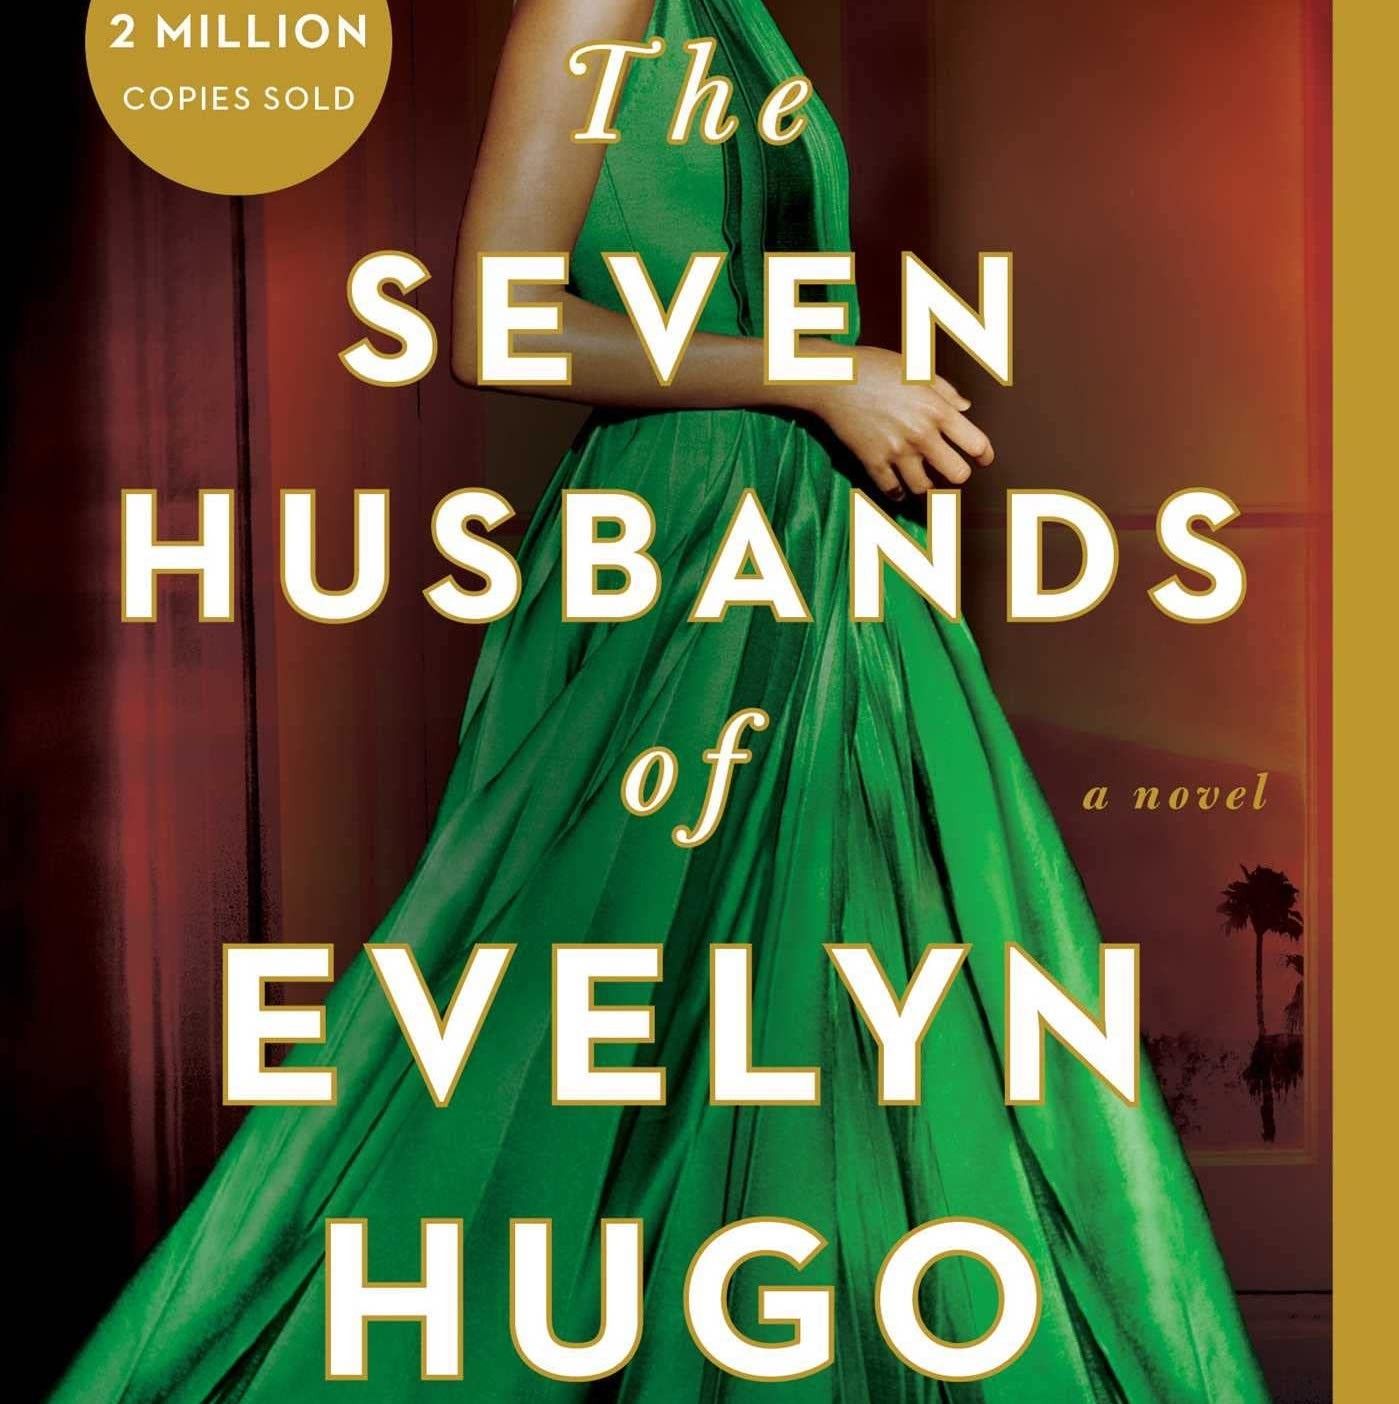 the seven husbands of evelyn hugo movie